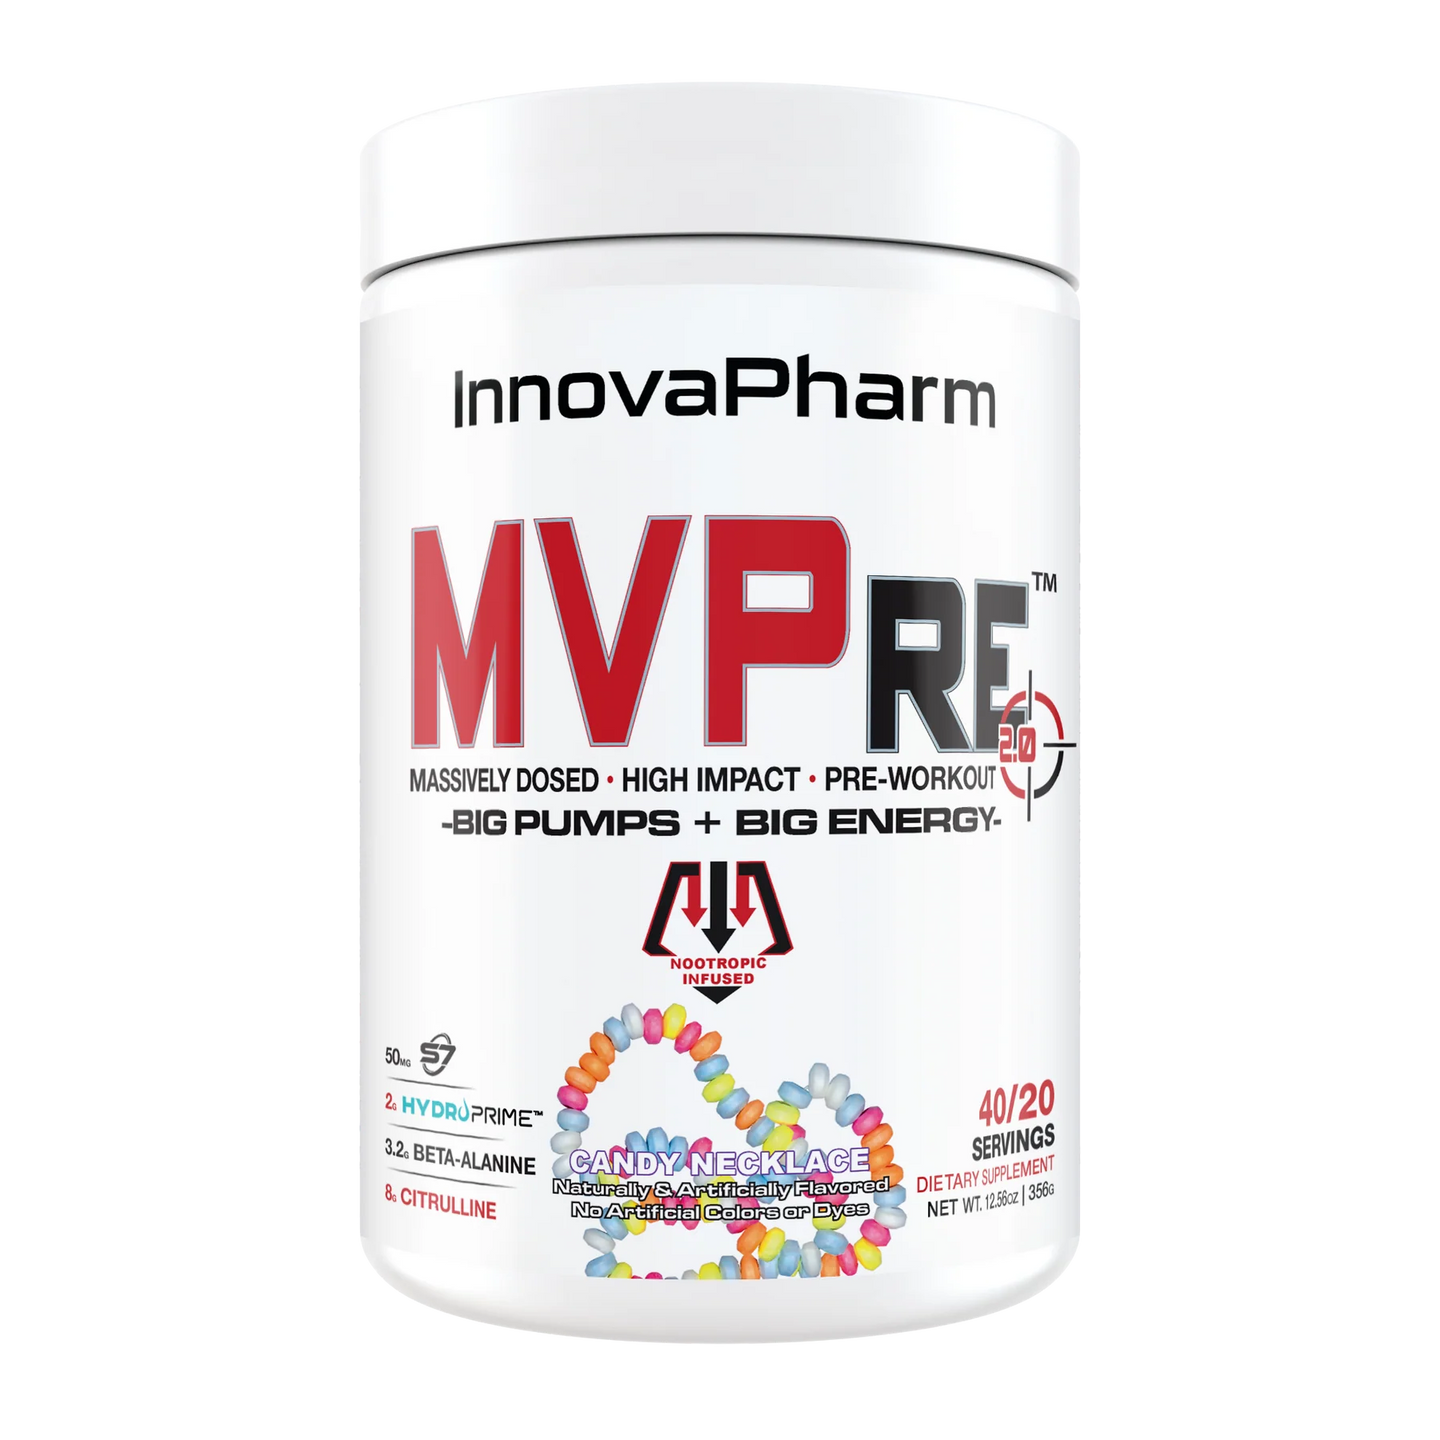 InnovaPharm MVPre 2.0 Pre-Workout - 40/20 Servings